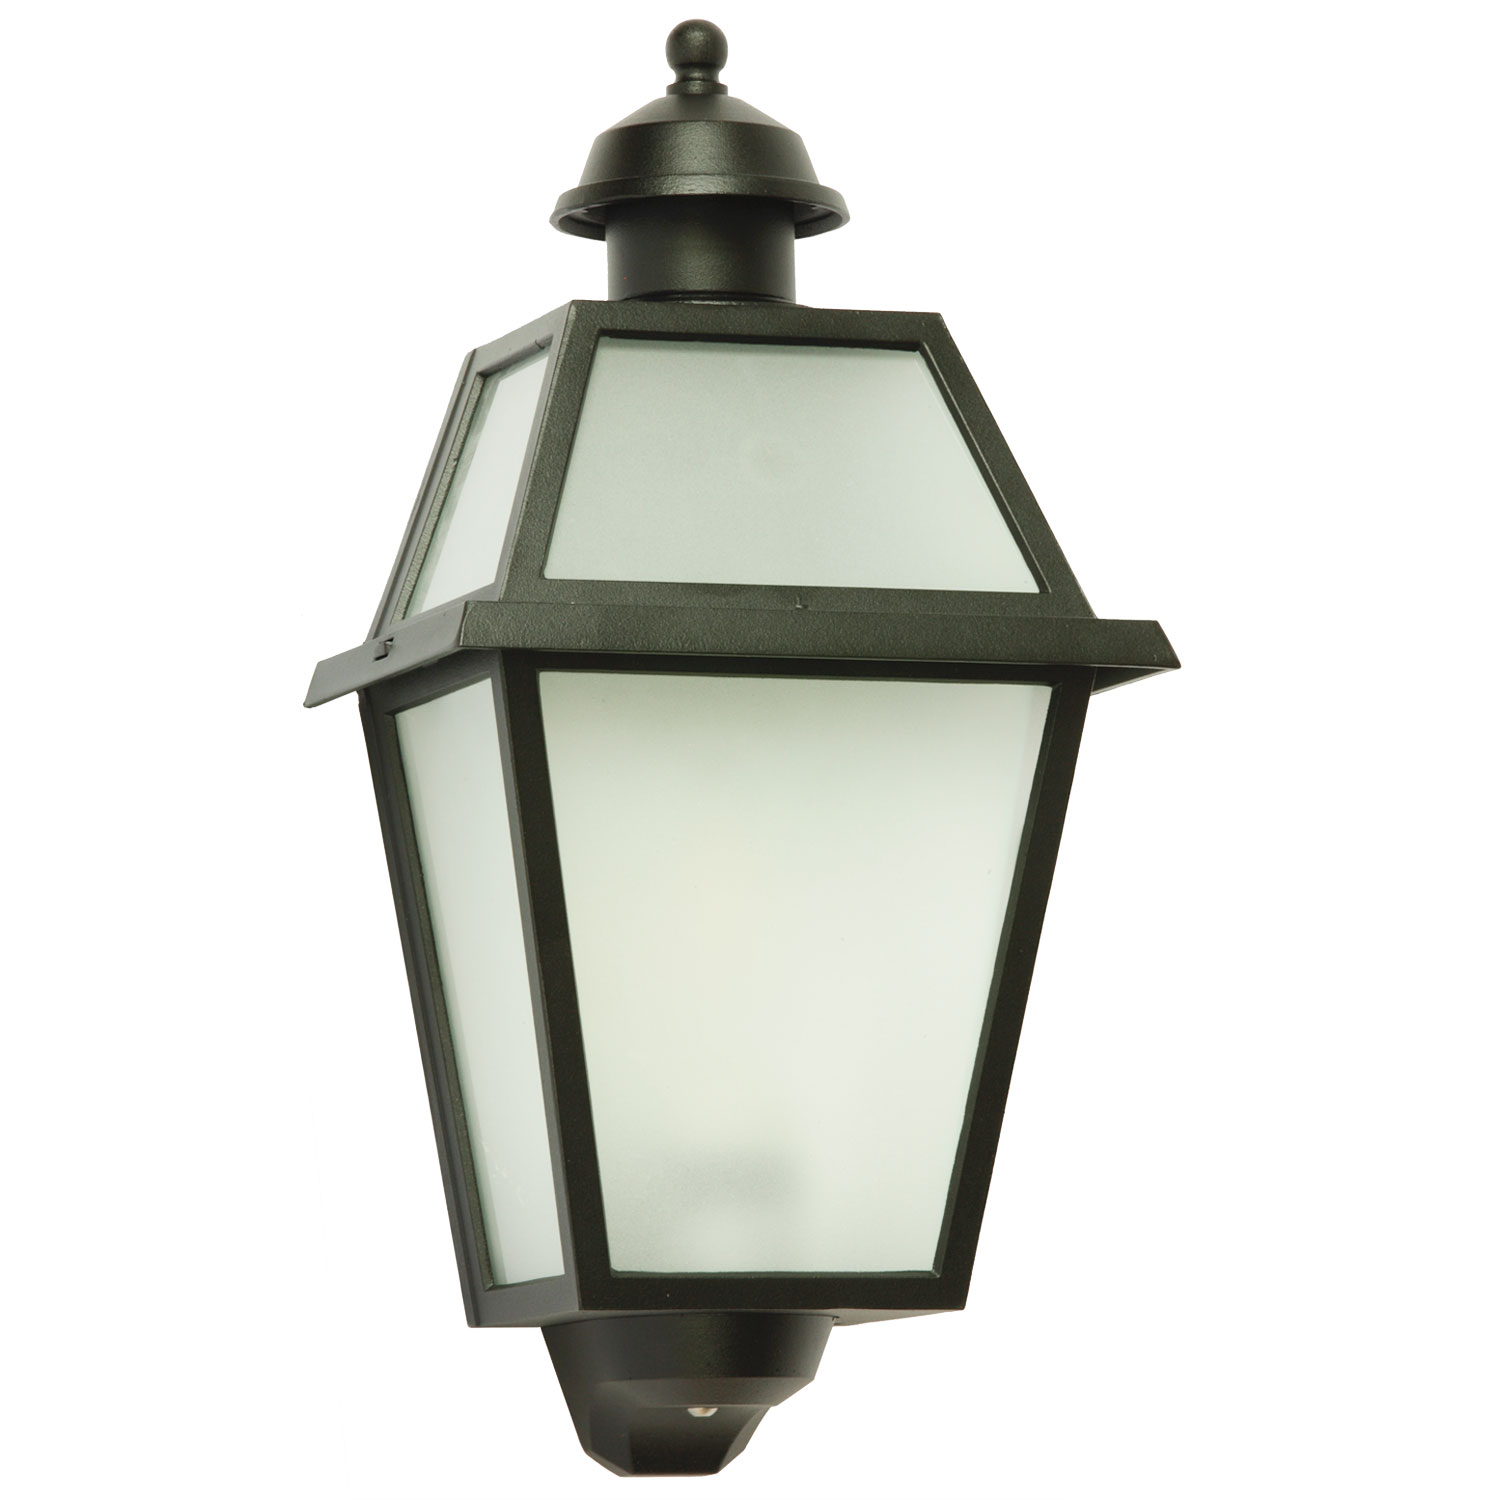 Flat outdoor wall light: Italian half-lantern